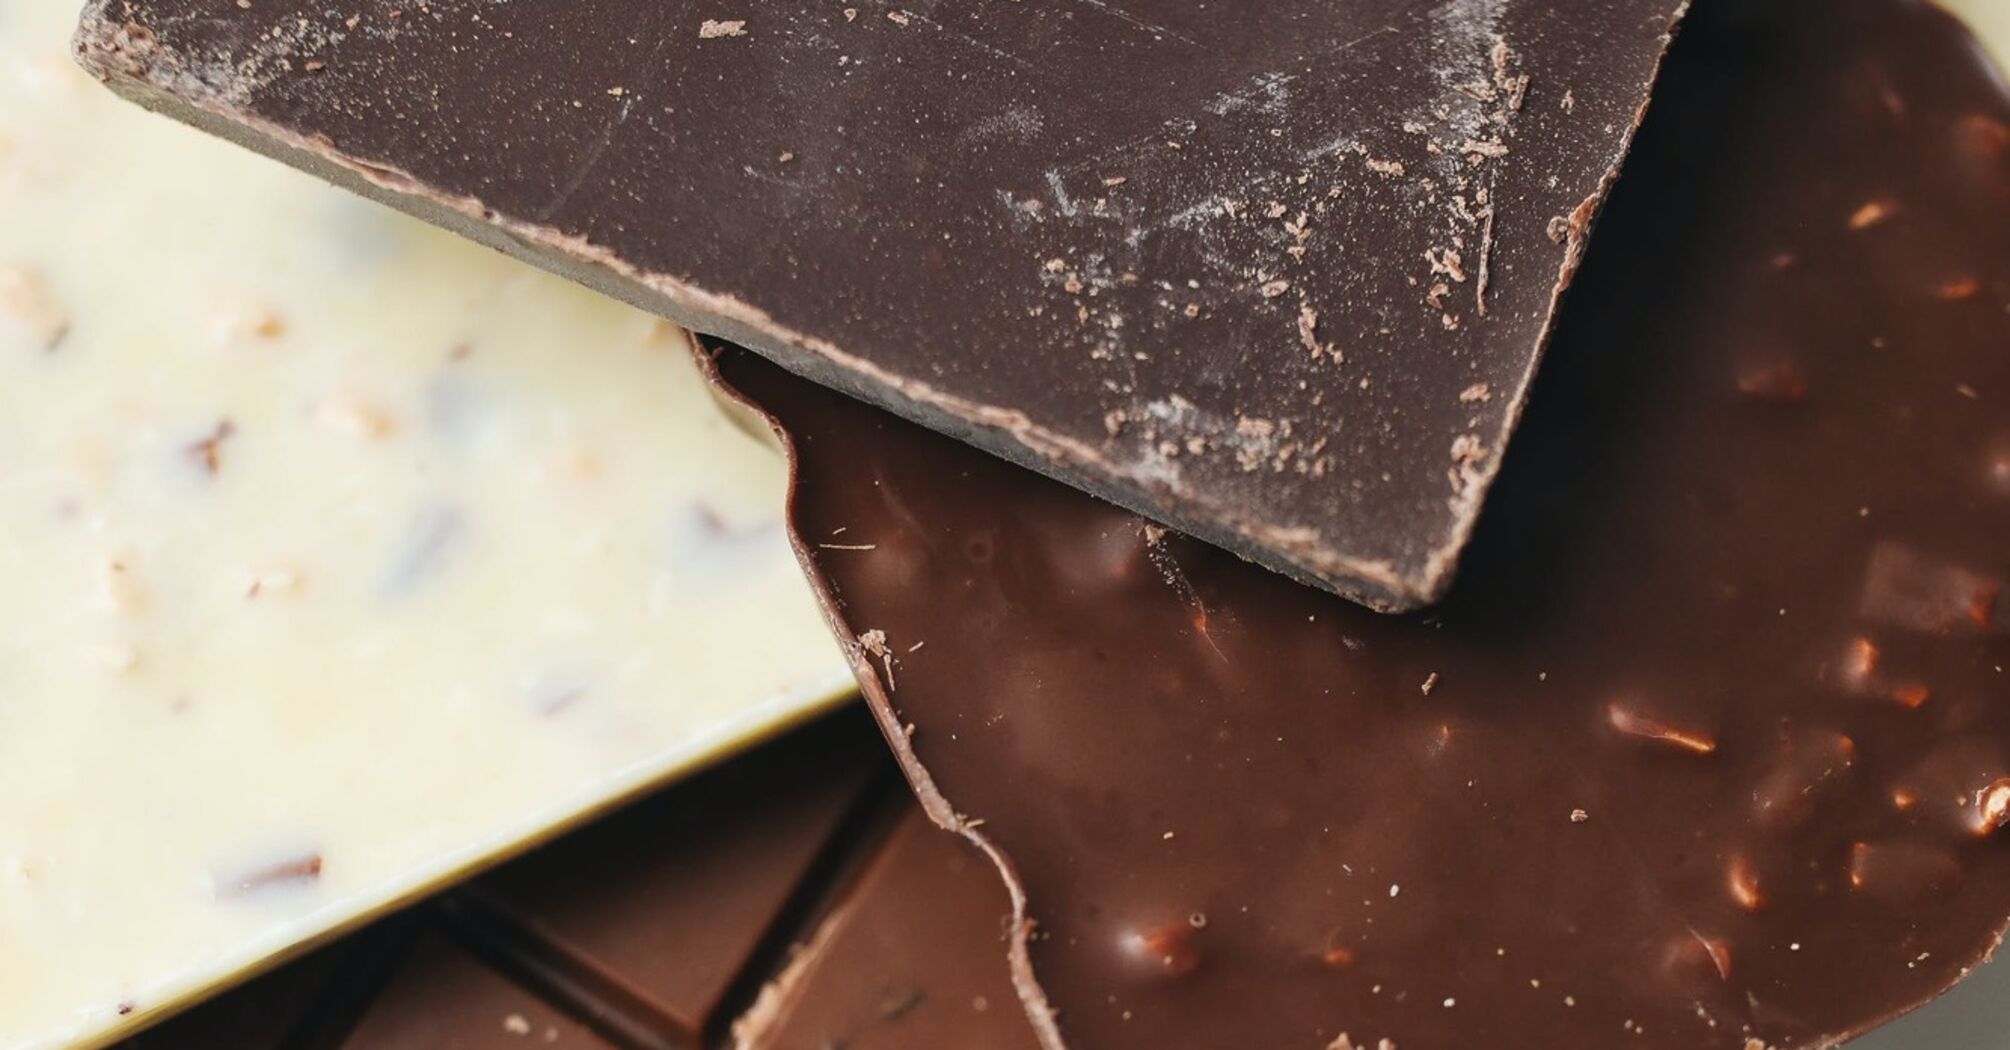 Как проверить натуральность шоколада: 5 действенных советов